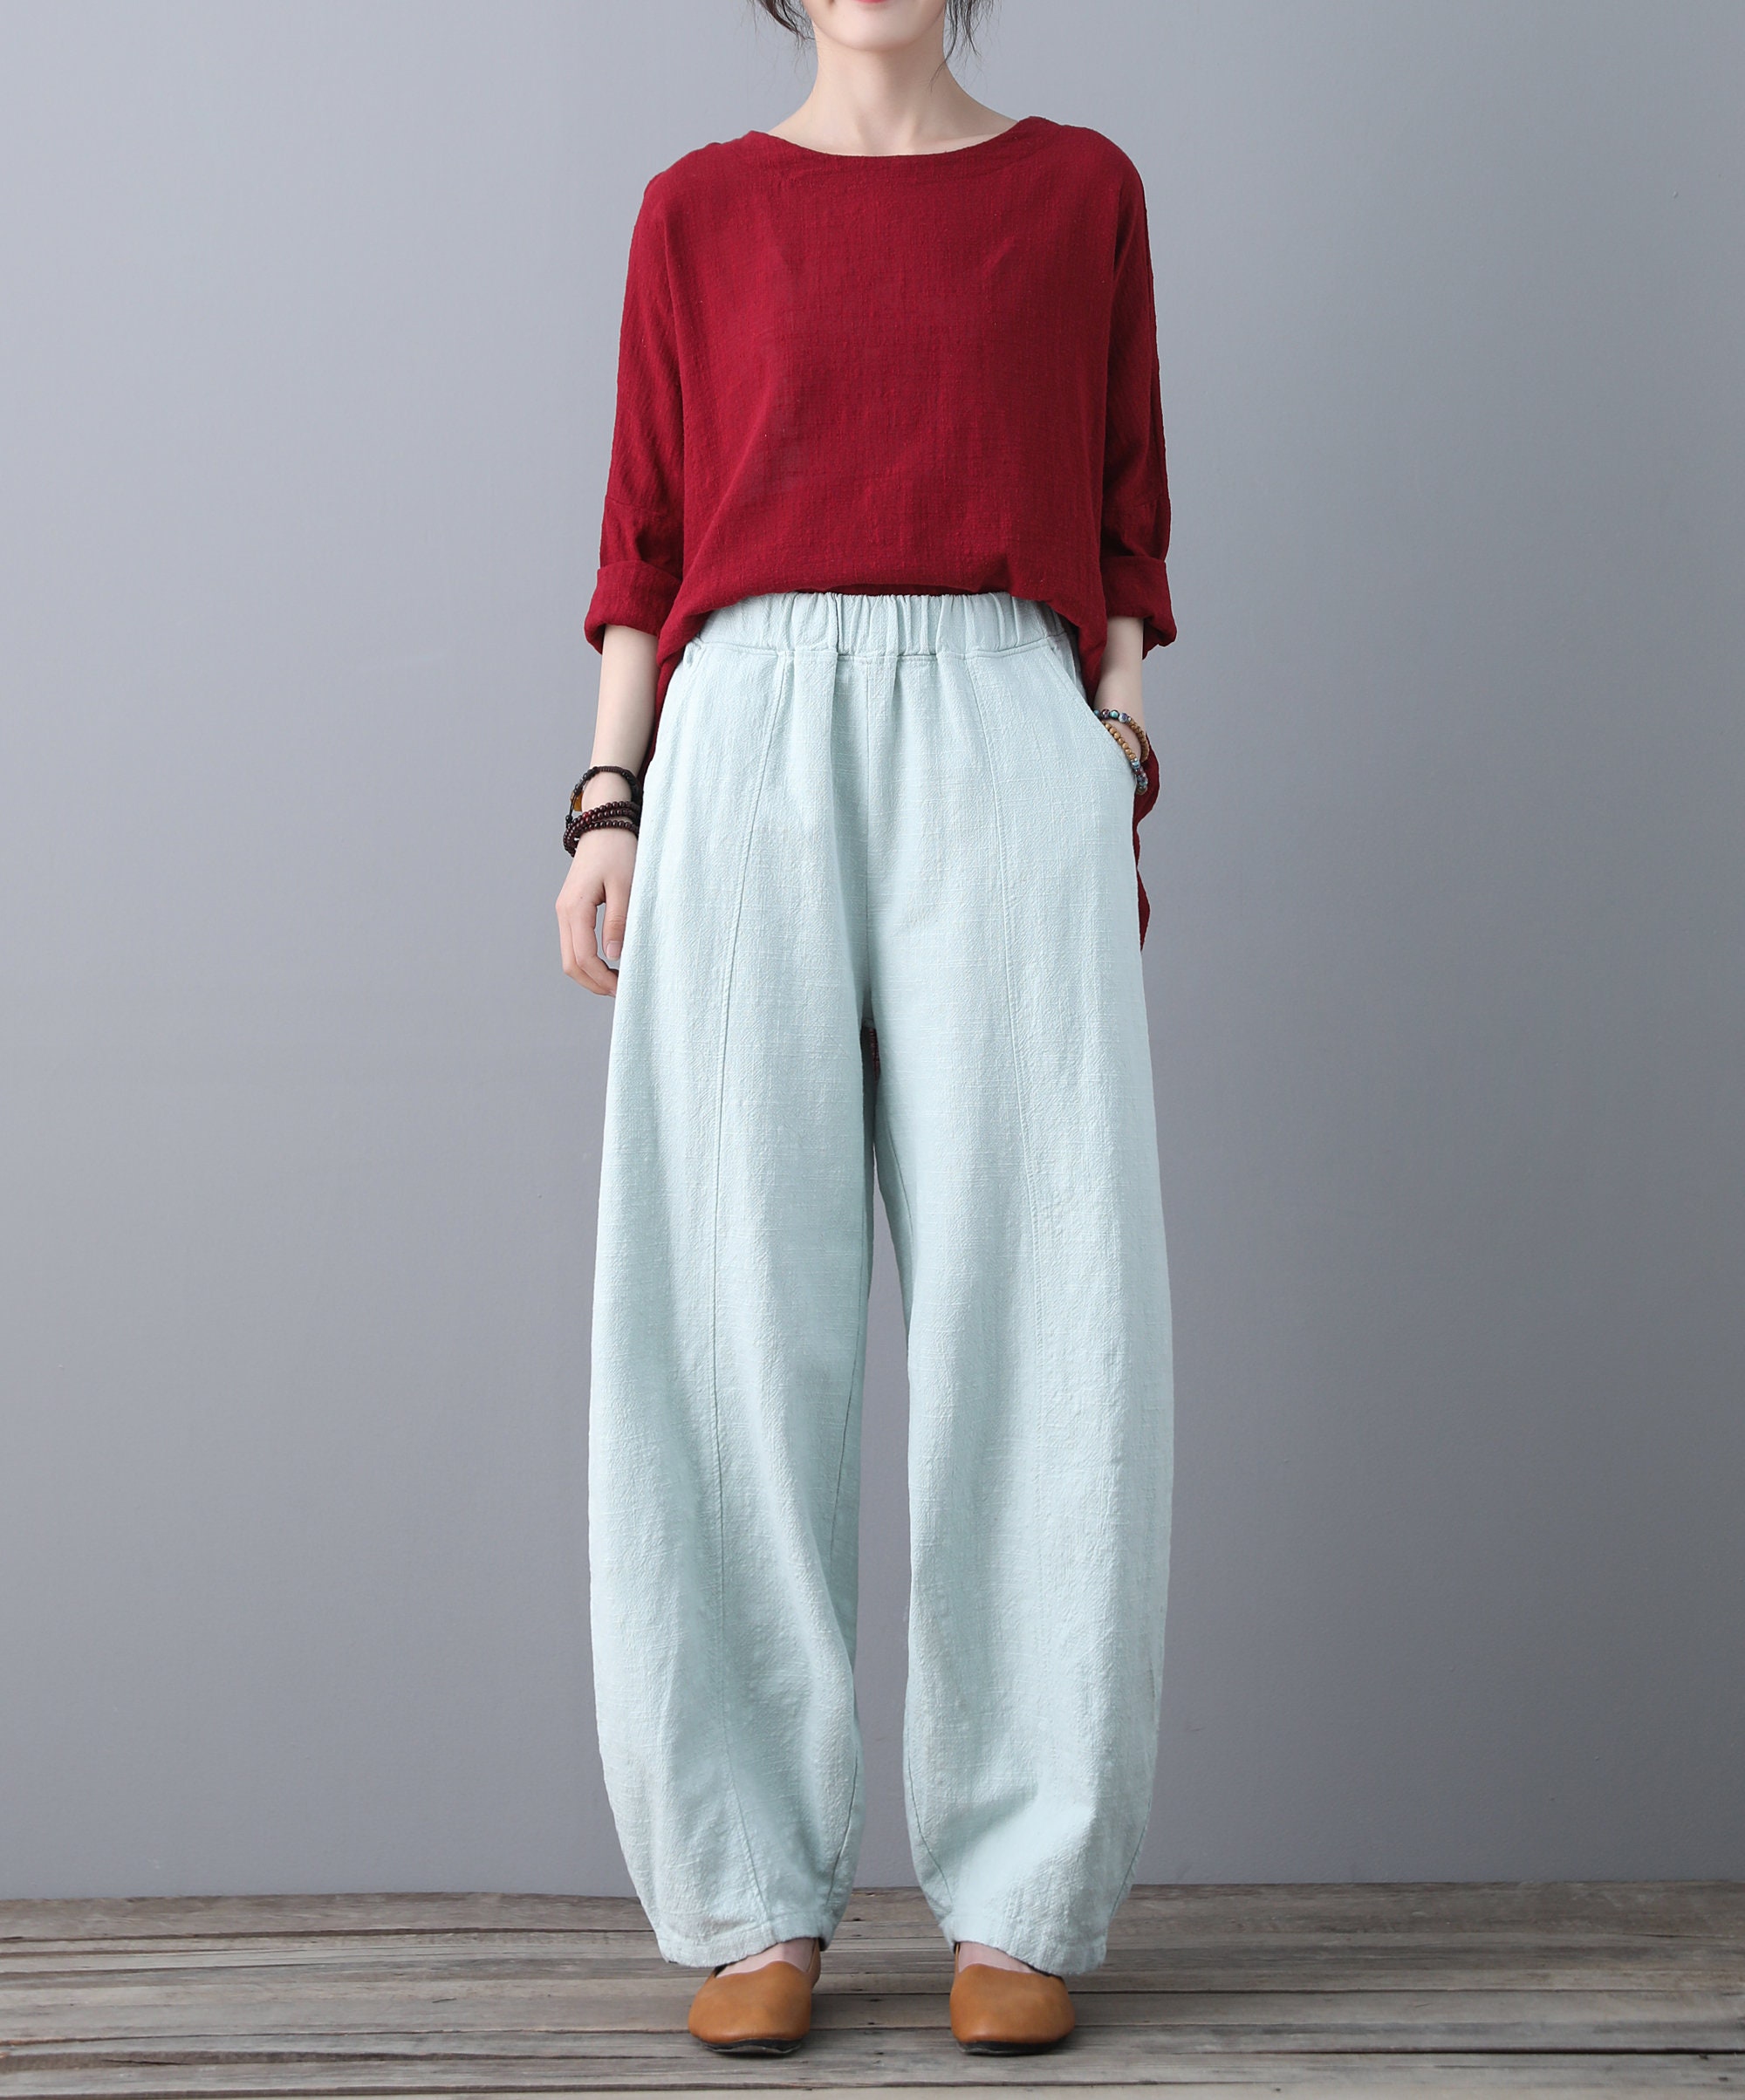 Harem Trousers Stripe Button Wide Leg Print Casual Fashion CCatyam Plus Size Pants for Women 